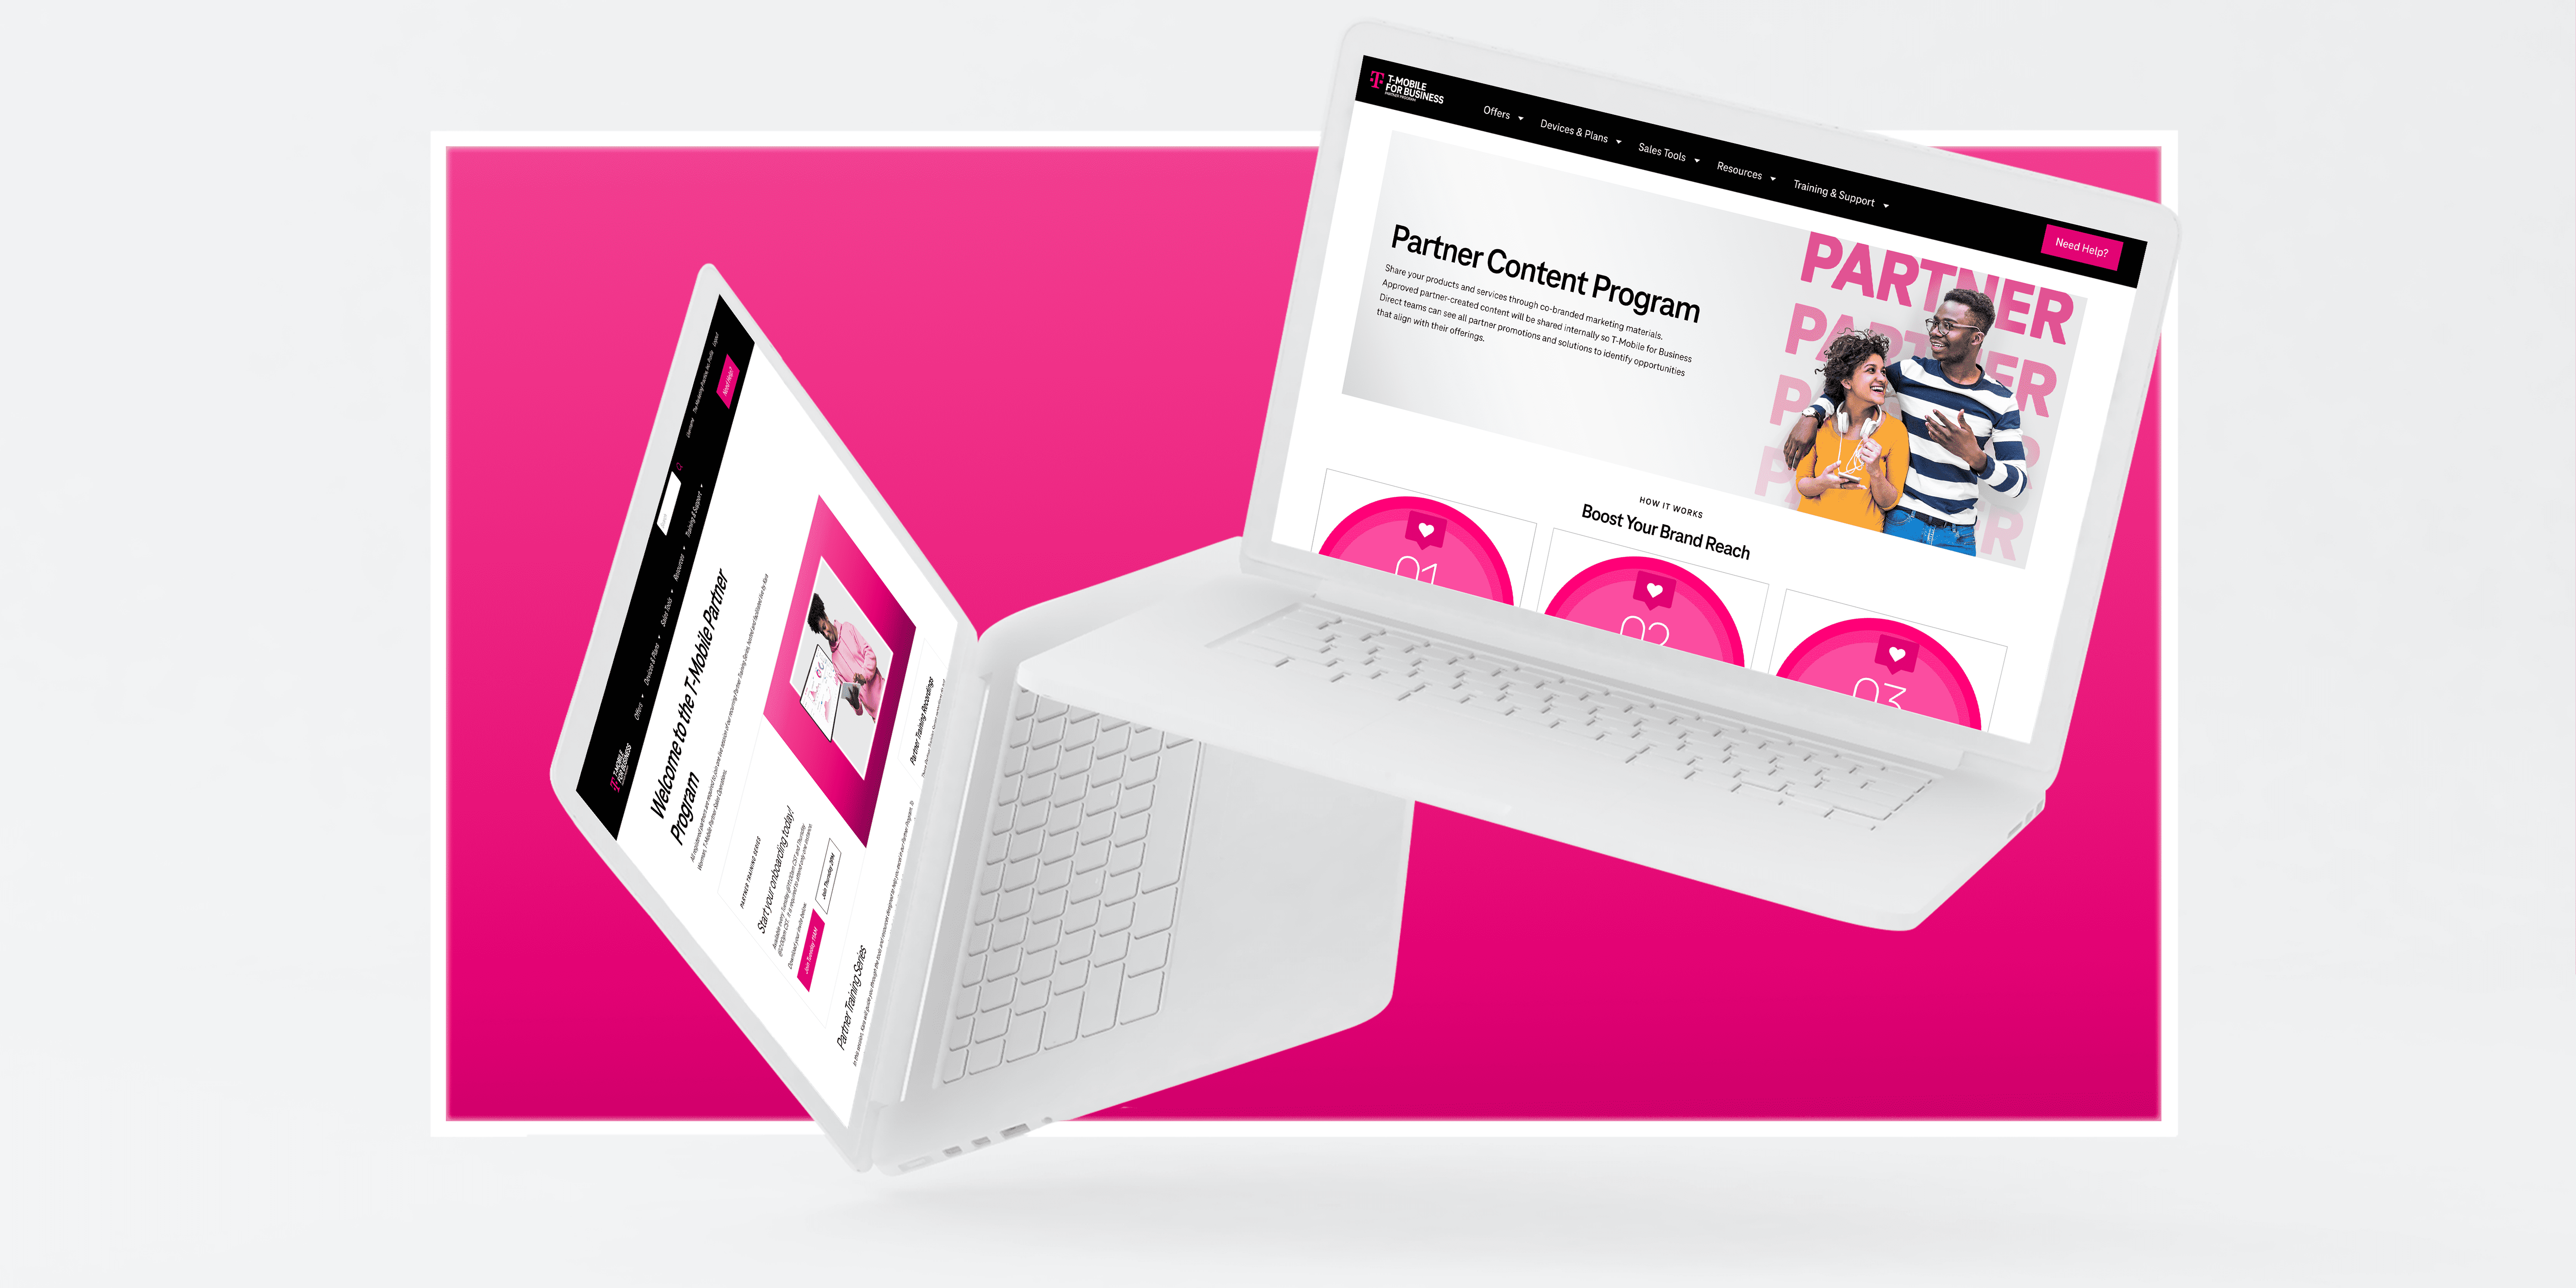 Partner Portal screens